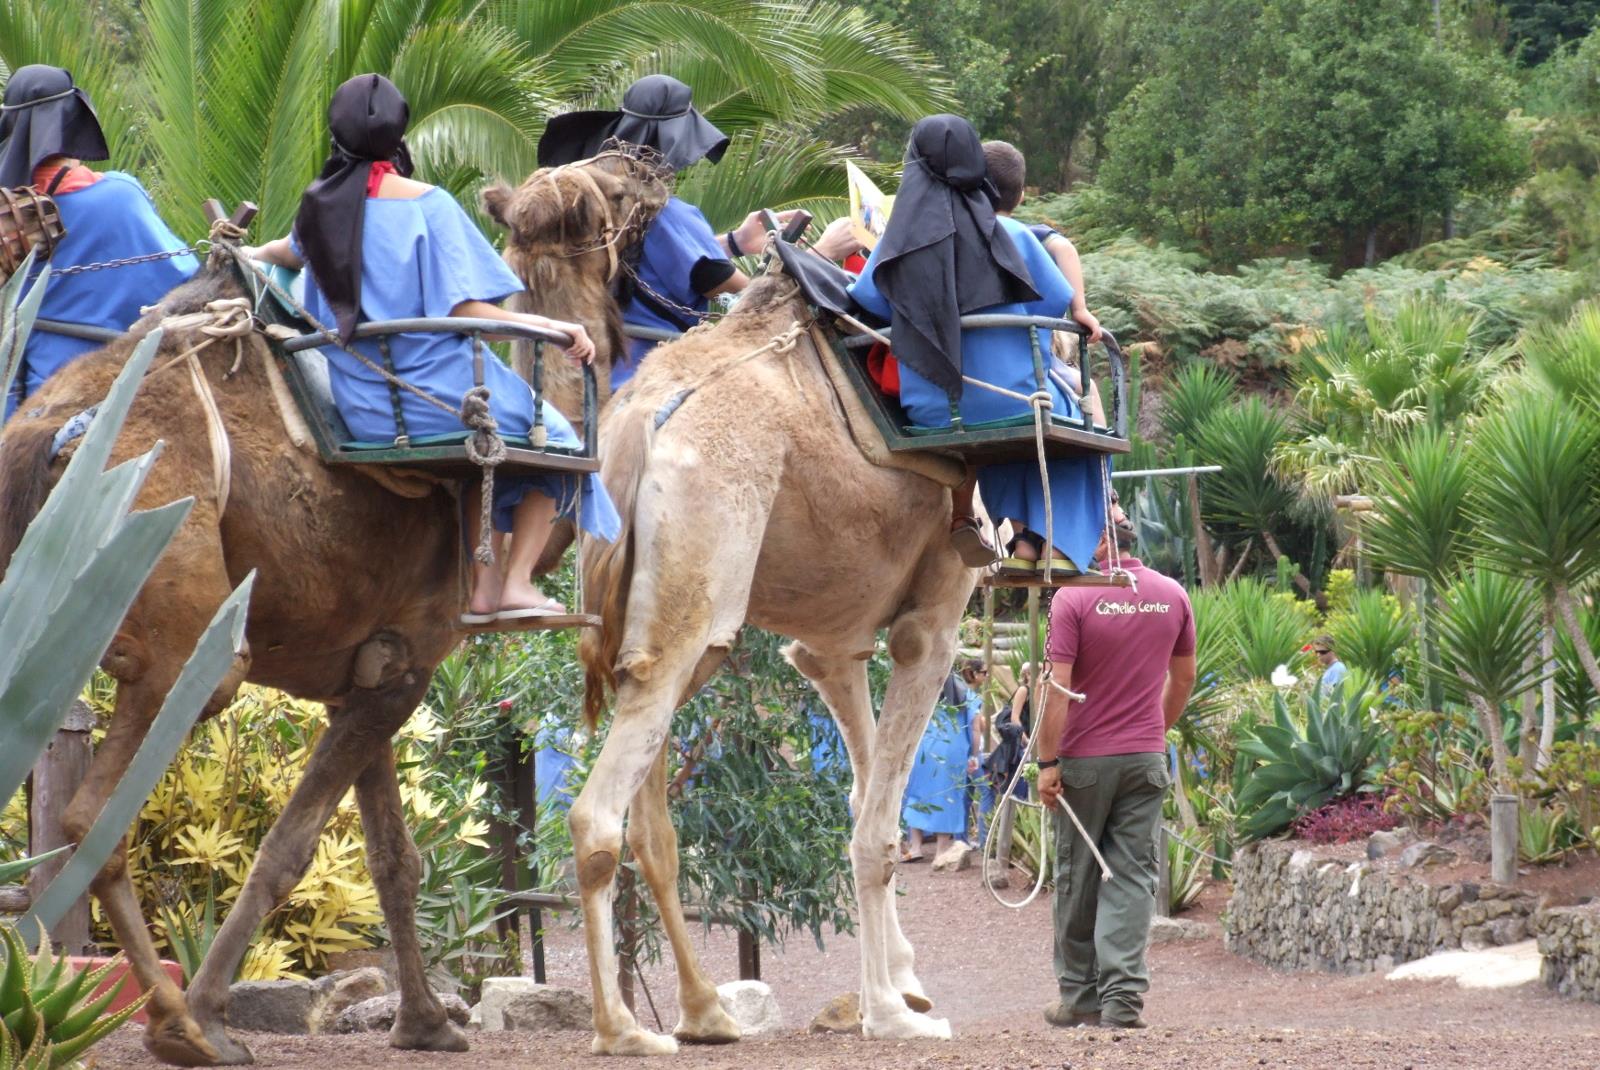 Camel Riding Tour at El Tanque